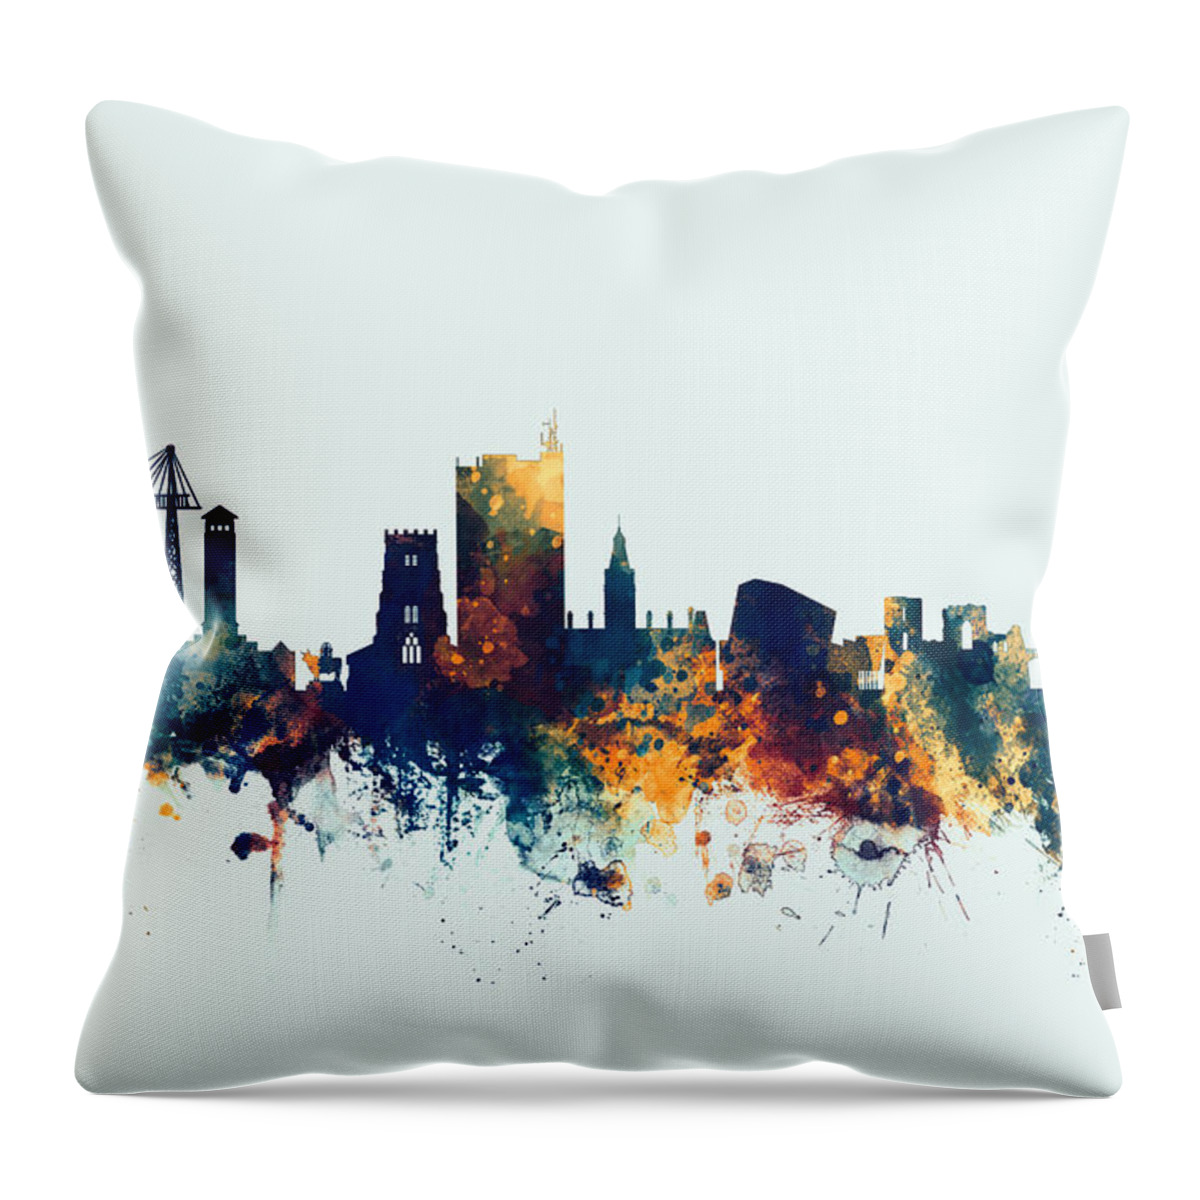 Newport Throw Pillow featuring the digital art Newport Wales Skyline #2 by Michael Tompsett